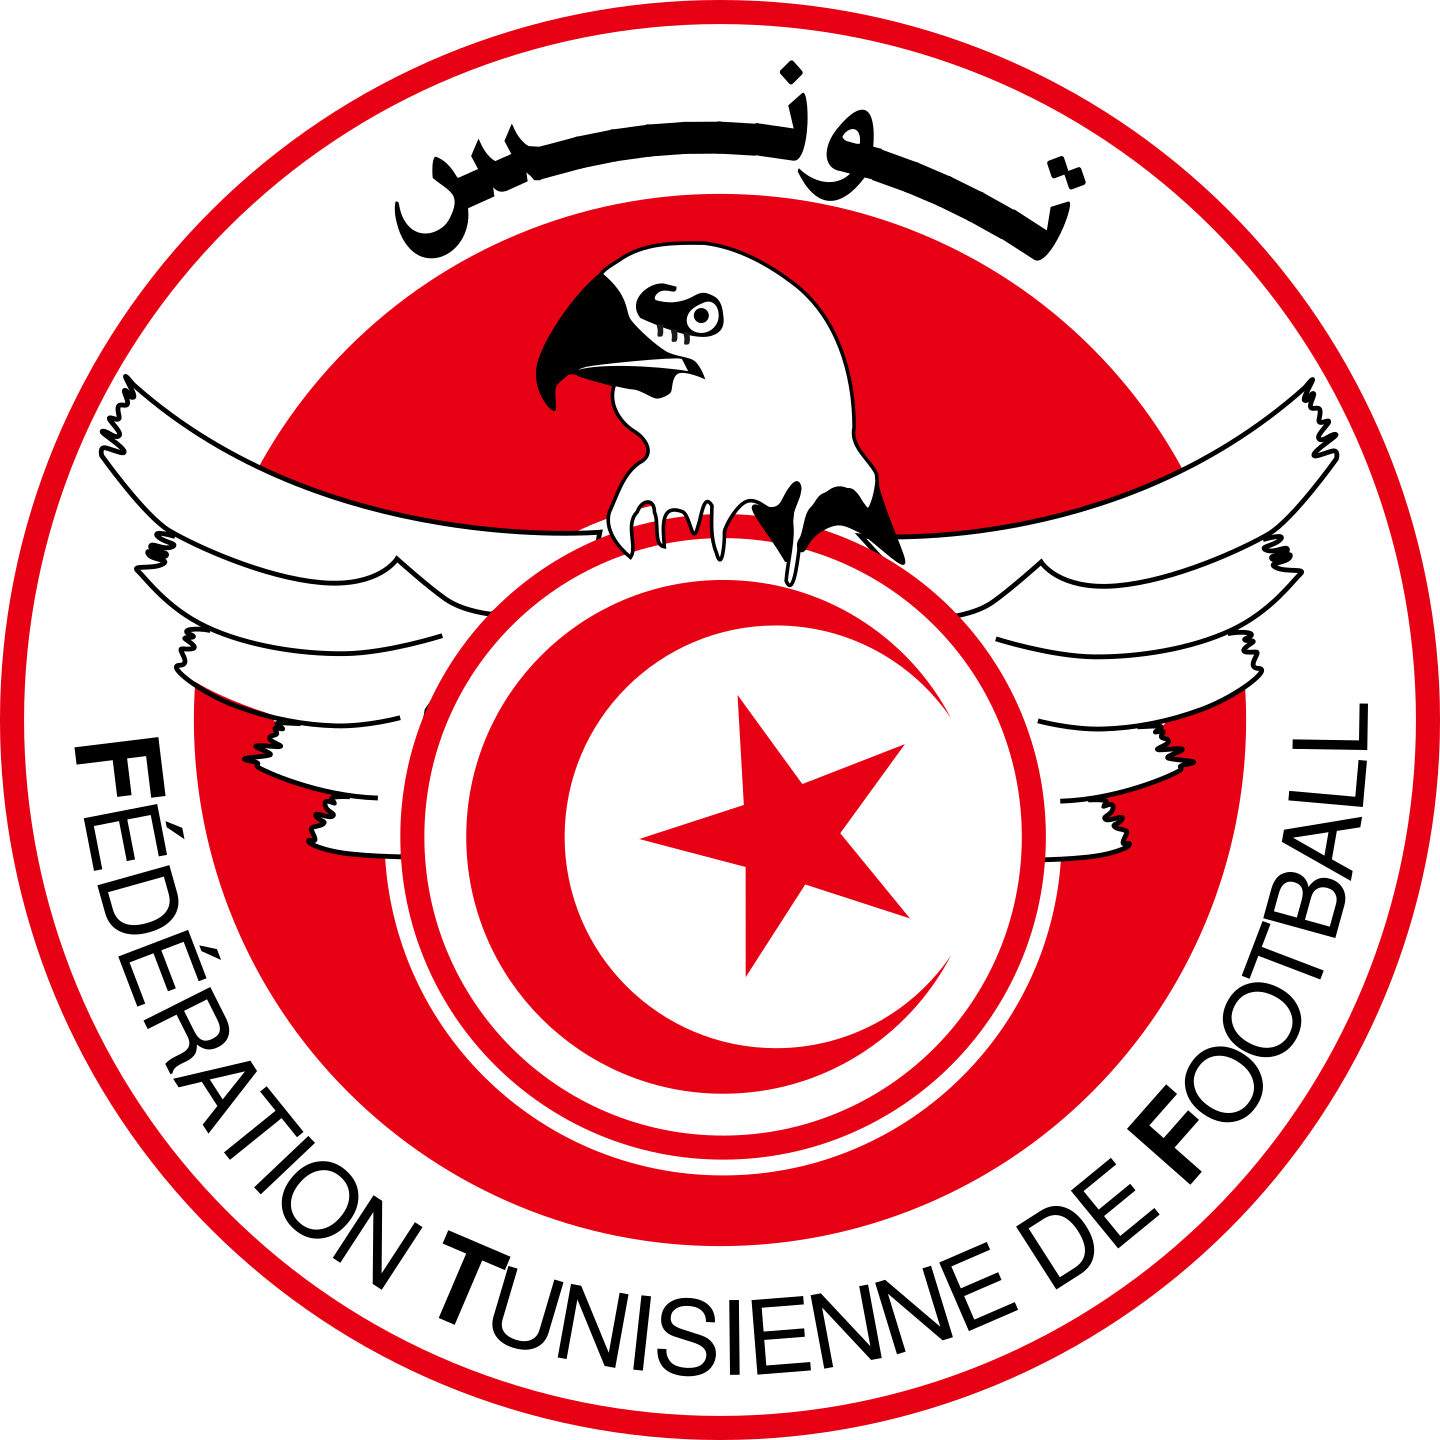 tunisia national football team logo 2 - Tunisia National Football Team